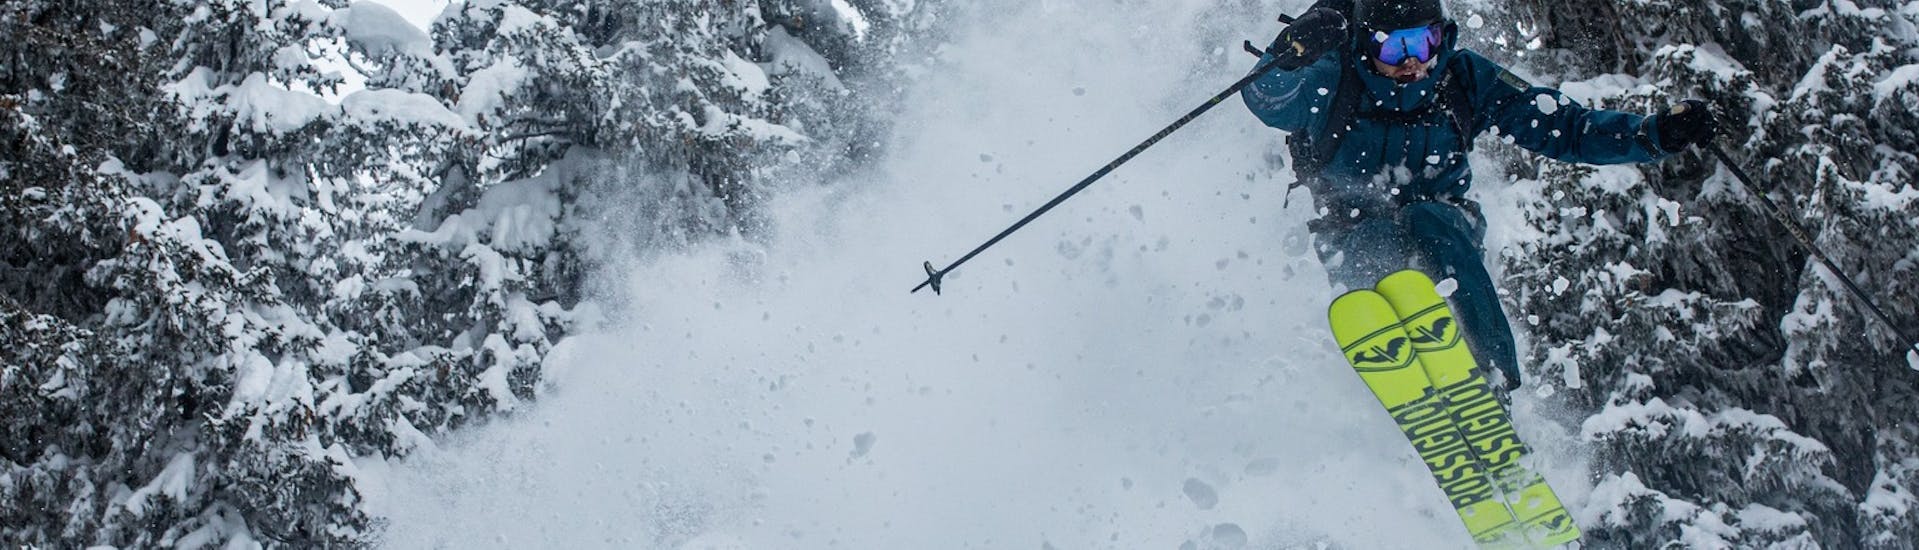 Clases de esquí privadas para adultos para todos los niveles.